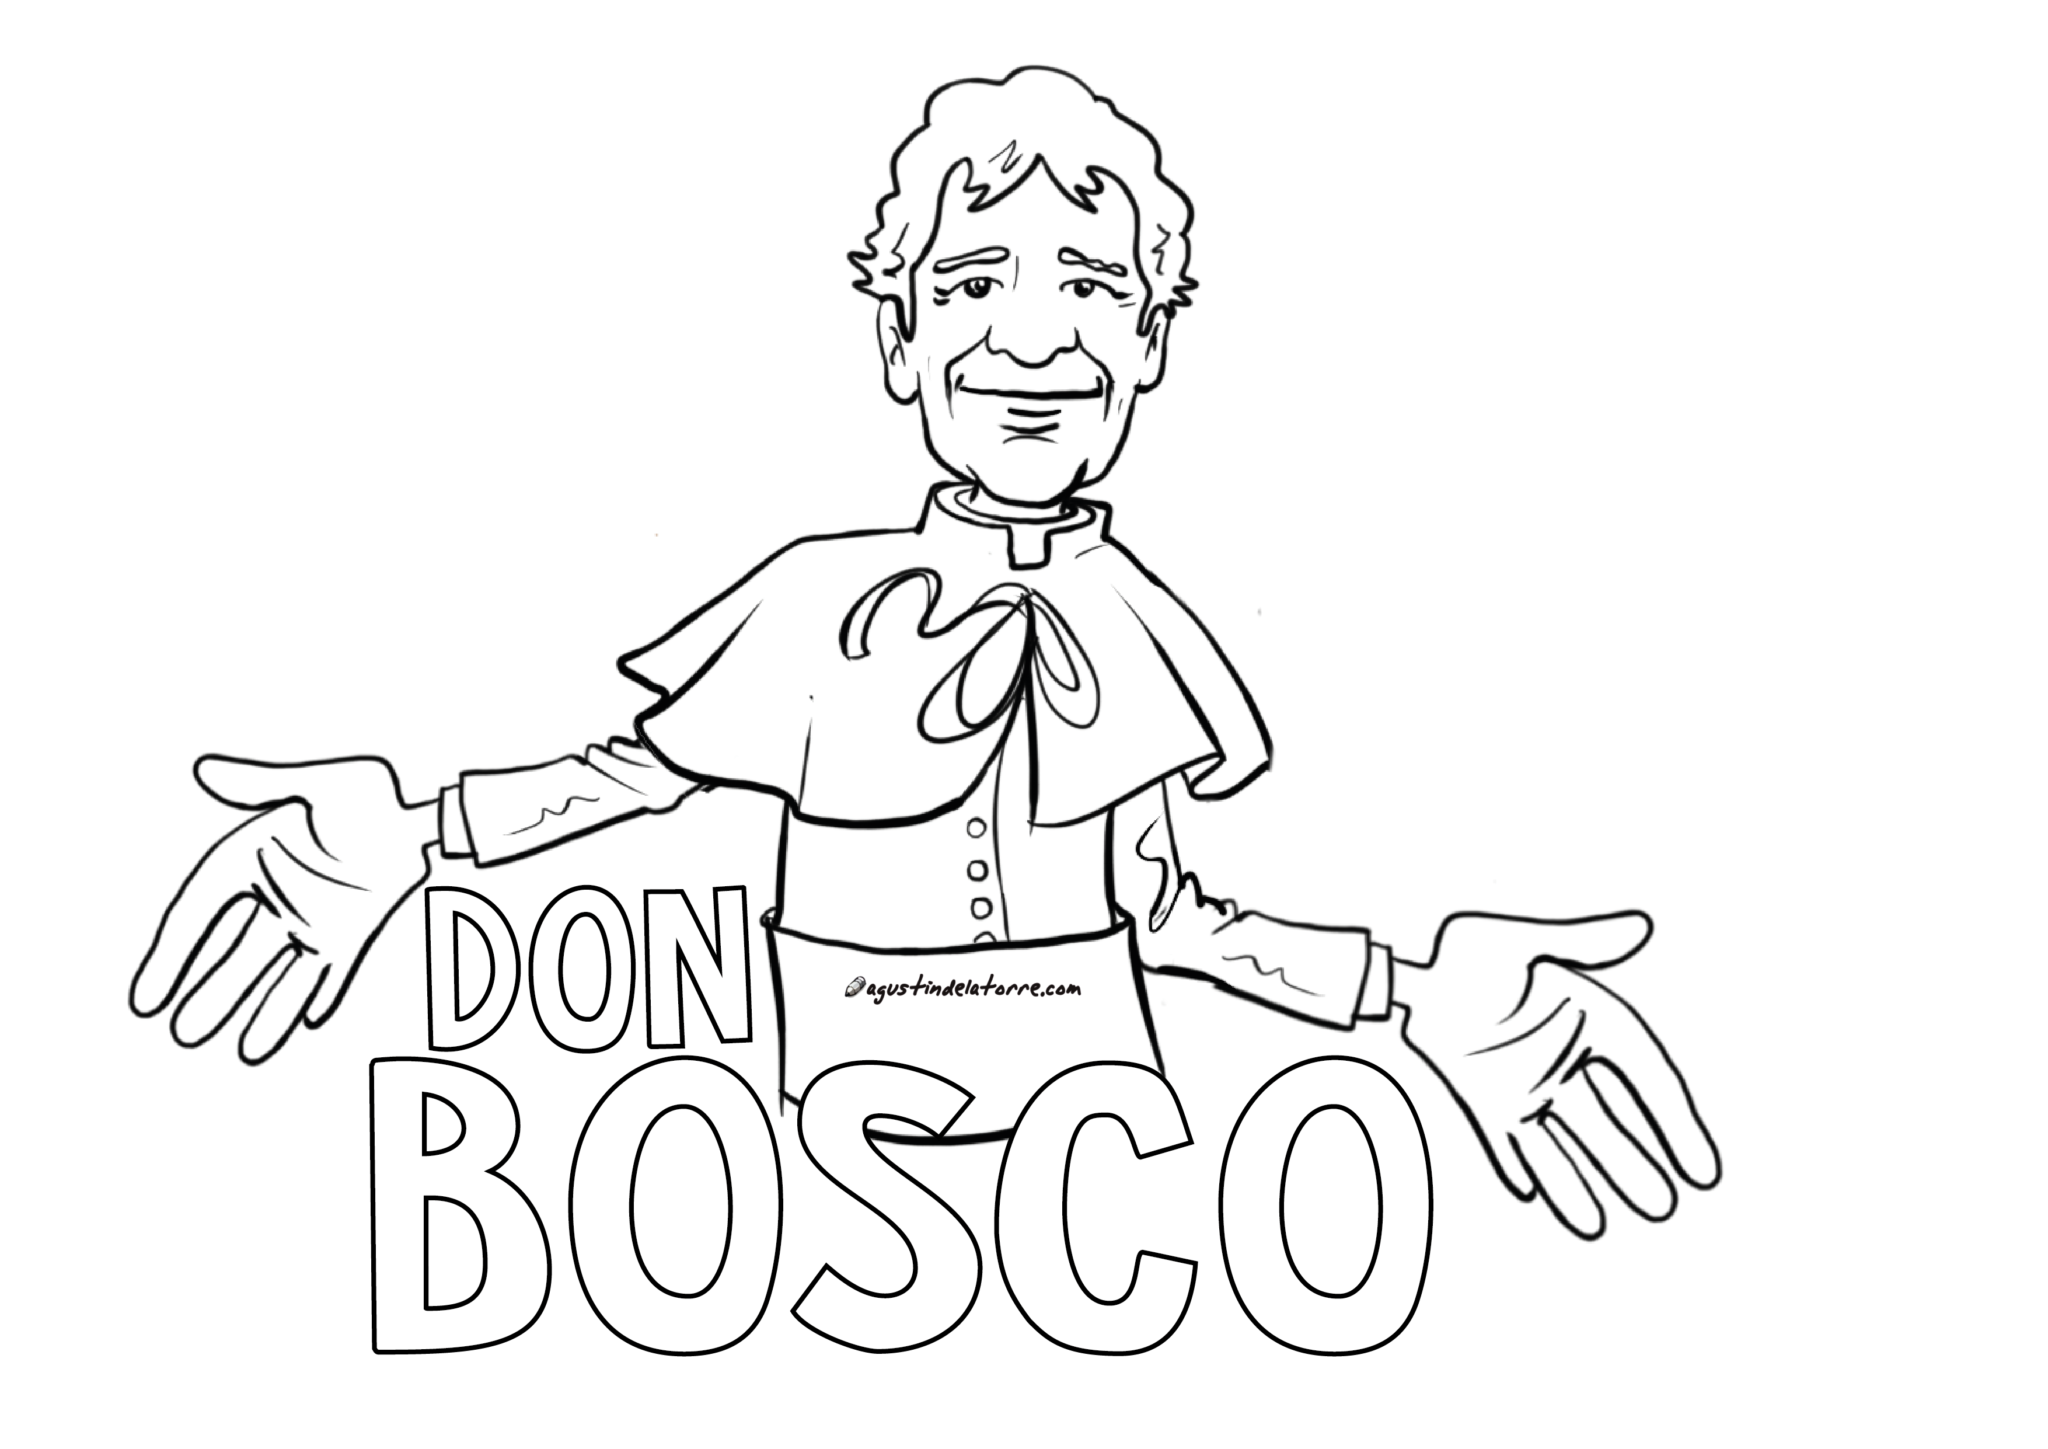 Don Bosco. Bosco логотип. Боско дипрок рисунок. Рисунок Bosco. Дон боско